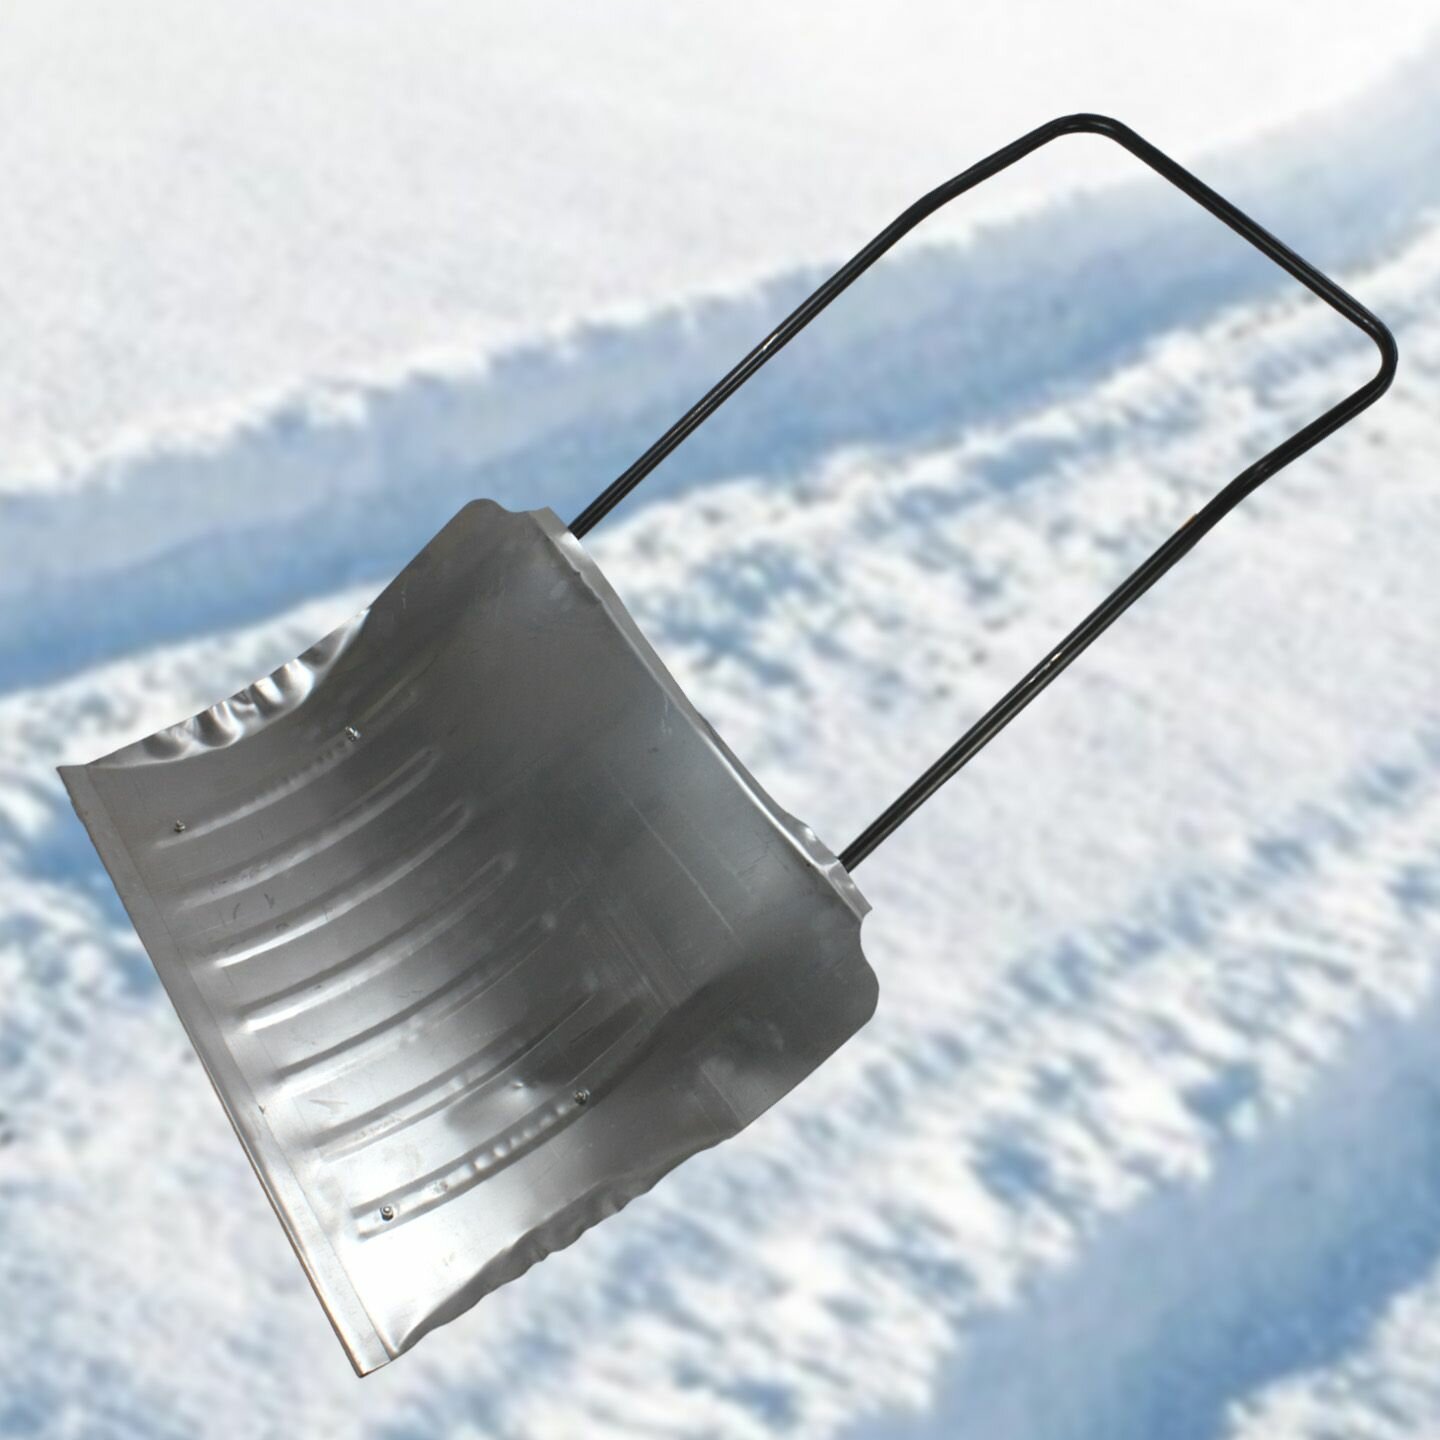 Скрепер для снега оцинкованный усиленный планкой, с ребрами жесткости. Размер ковша: 750*600*0,8 мм